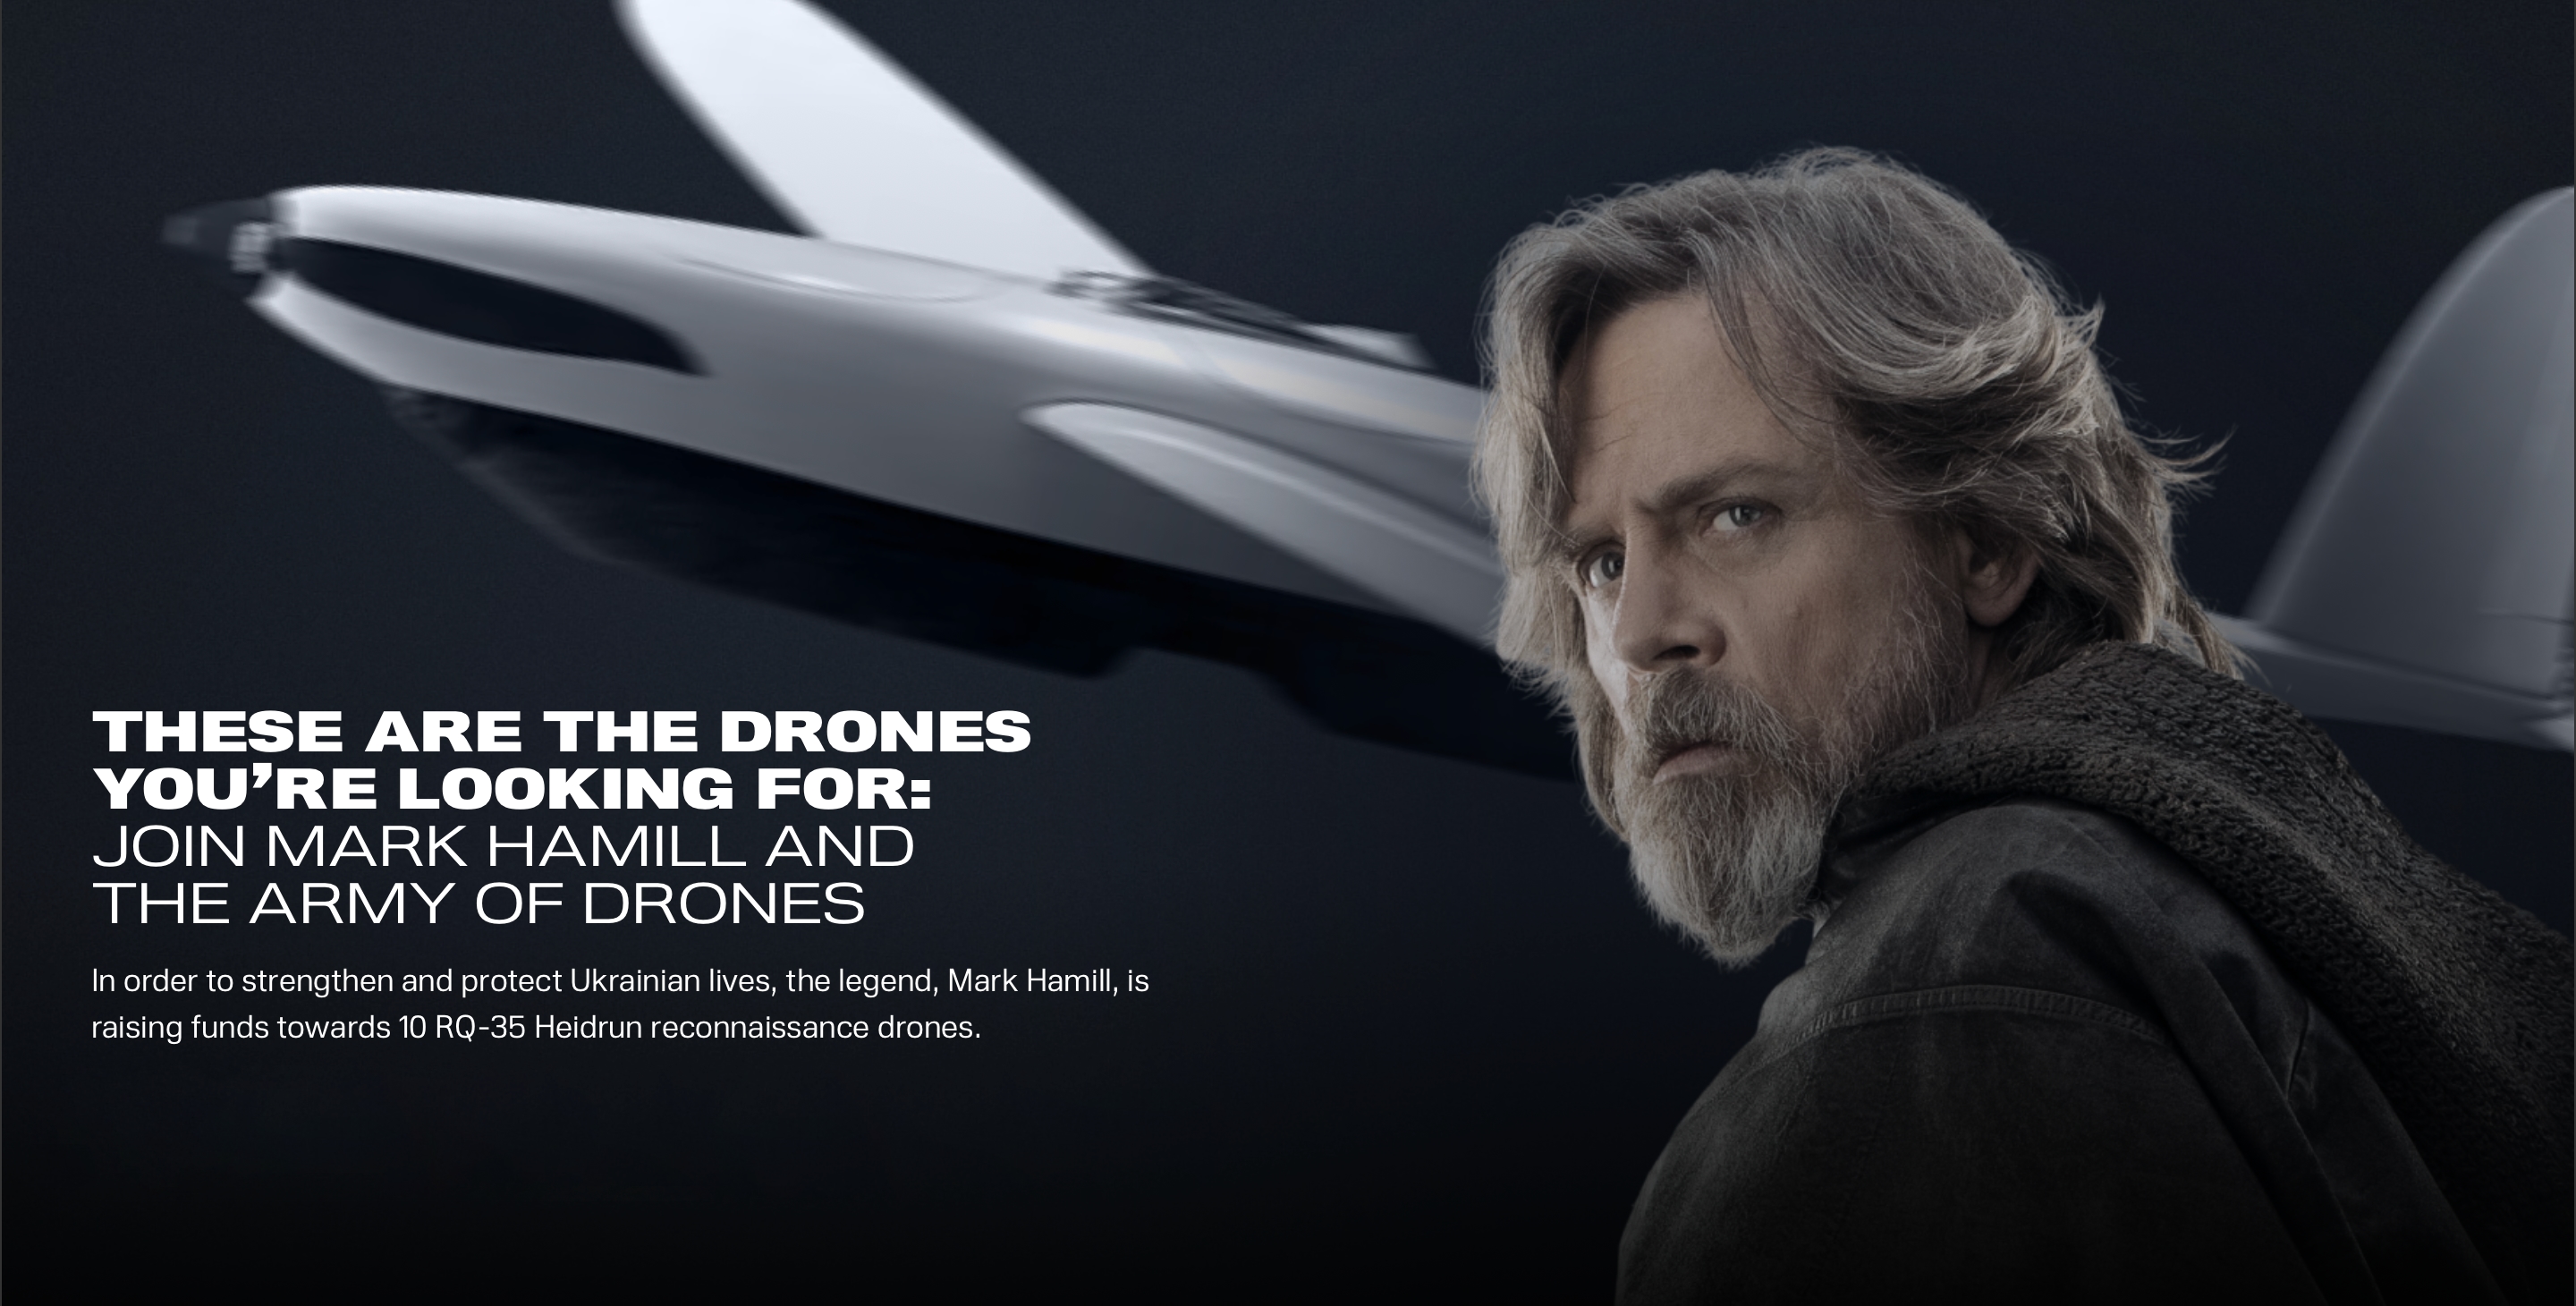 L'acteur de "Star Wars" Mark Hamill collecte des fonds par le biais de la plateforme UNITED24 pour les drones de reconnaissance RQ-35 Heidrun destinés à l'AFU.